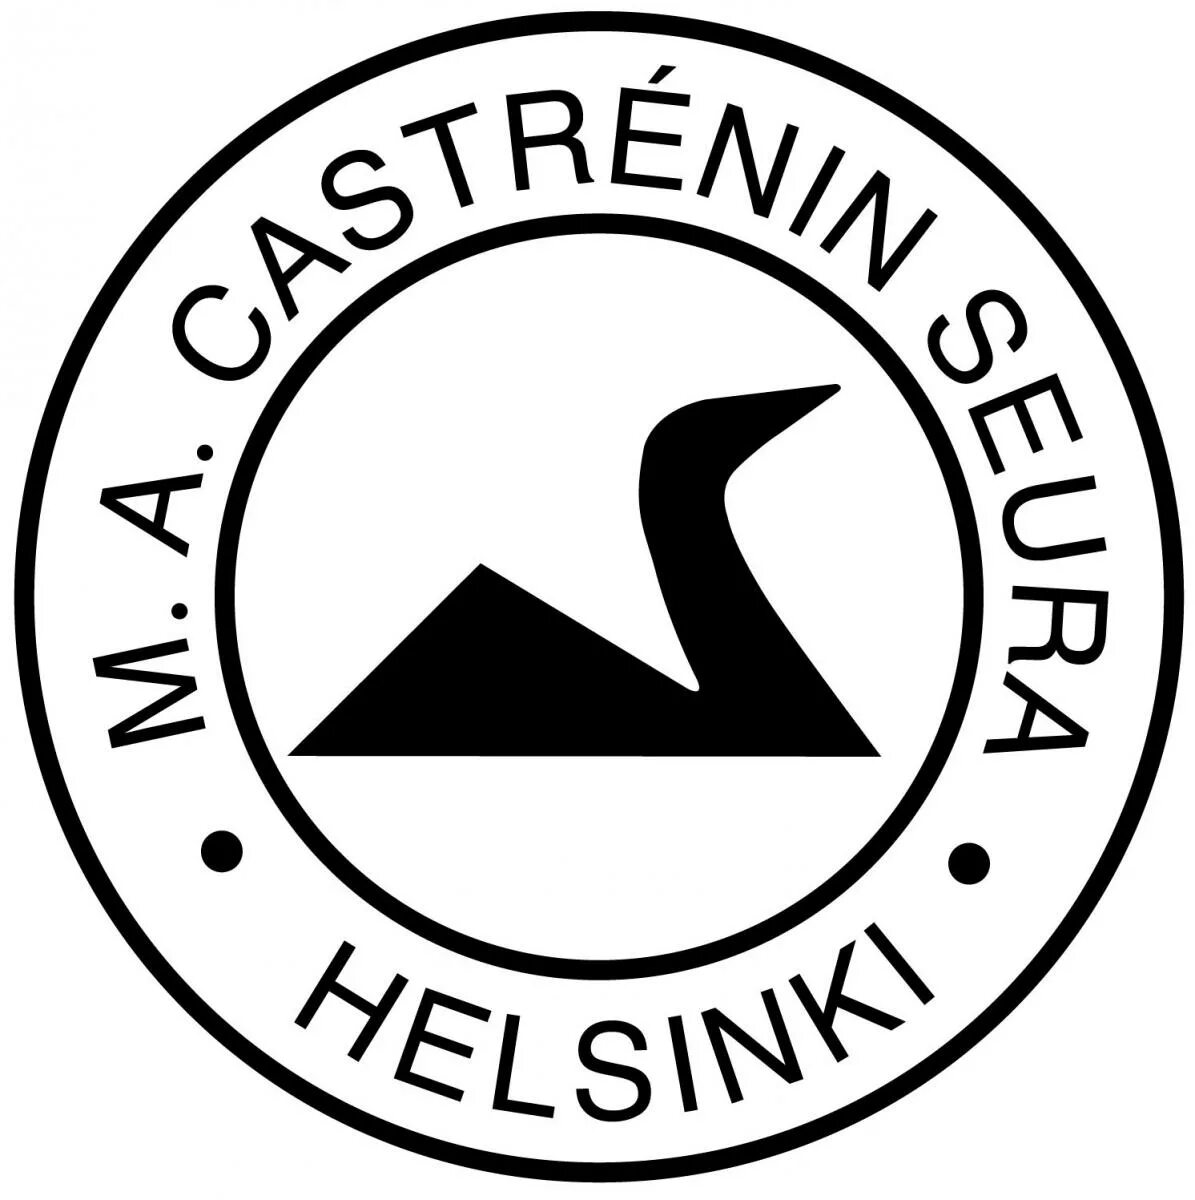 Общество Кастрена. Общество Кастрена Финляндия. Общество м. Castr logo.